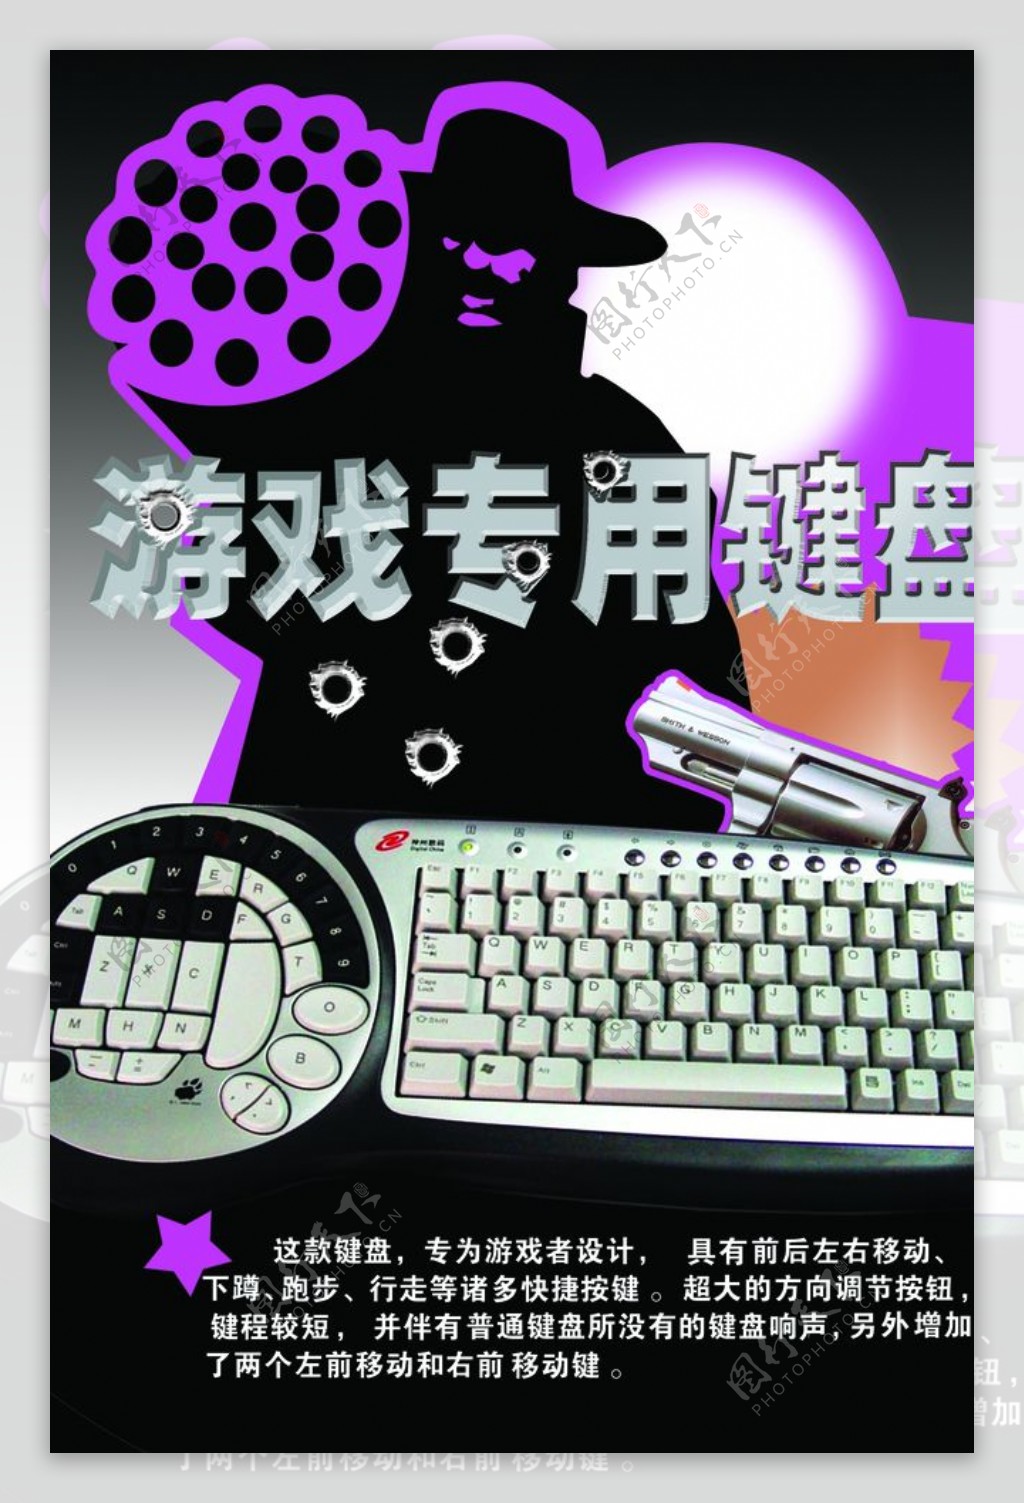 游戏专用键盘宣传海报